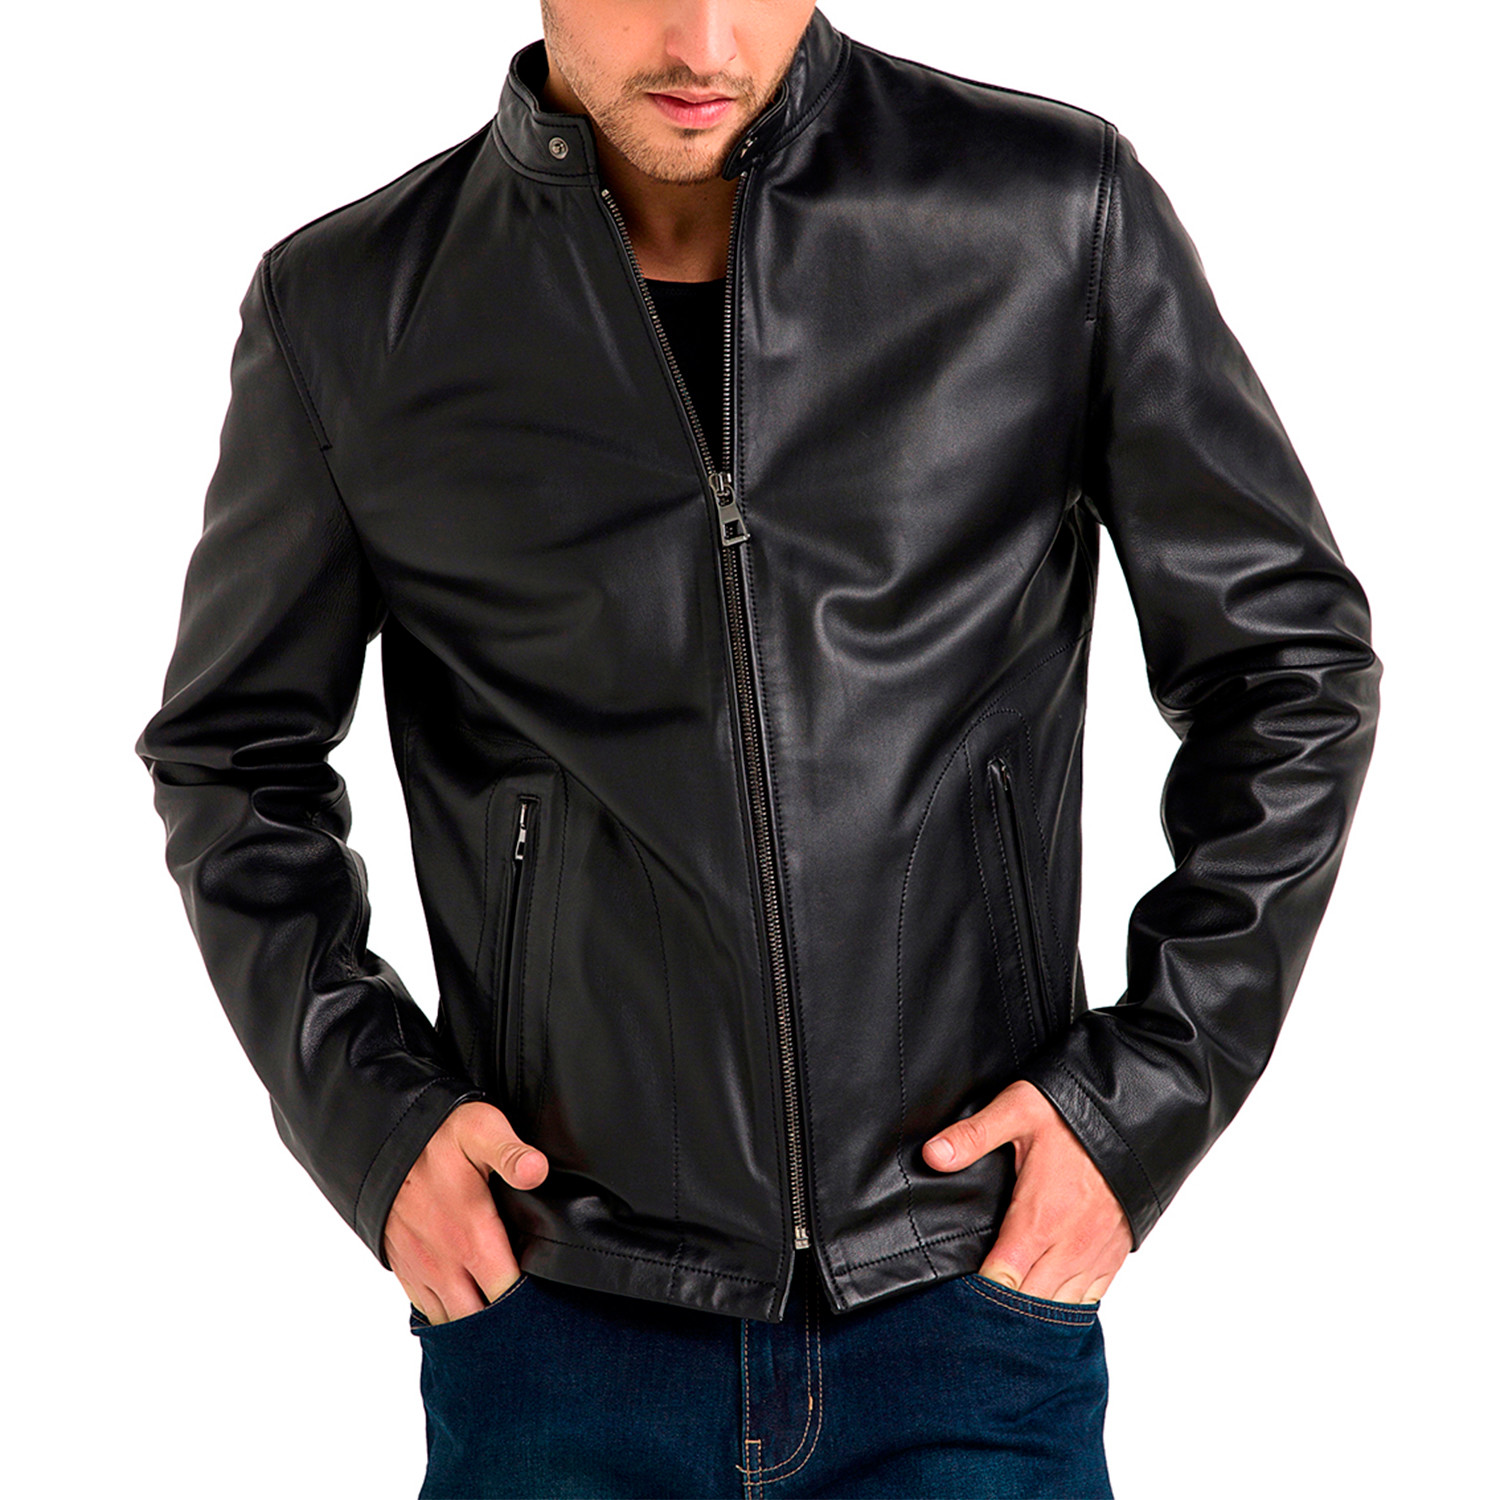 Charles Leather Jacket // Black (Medium) - Brasco Fashion Group ...